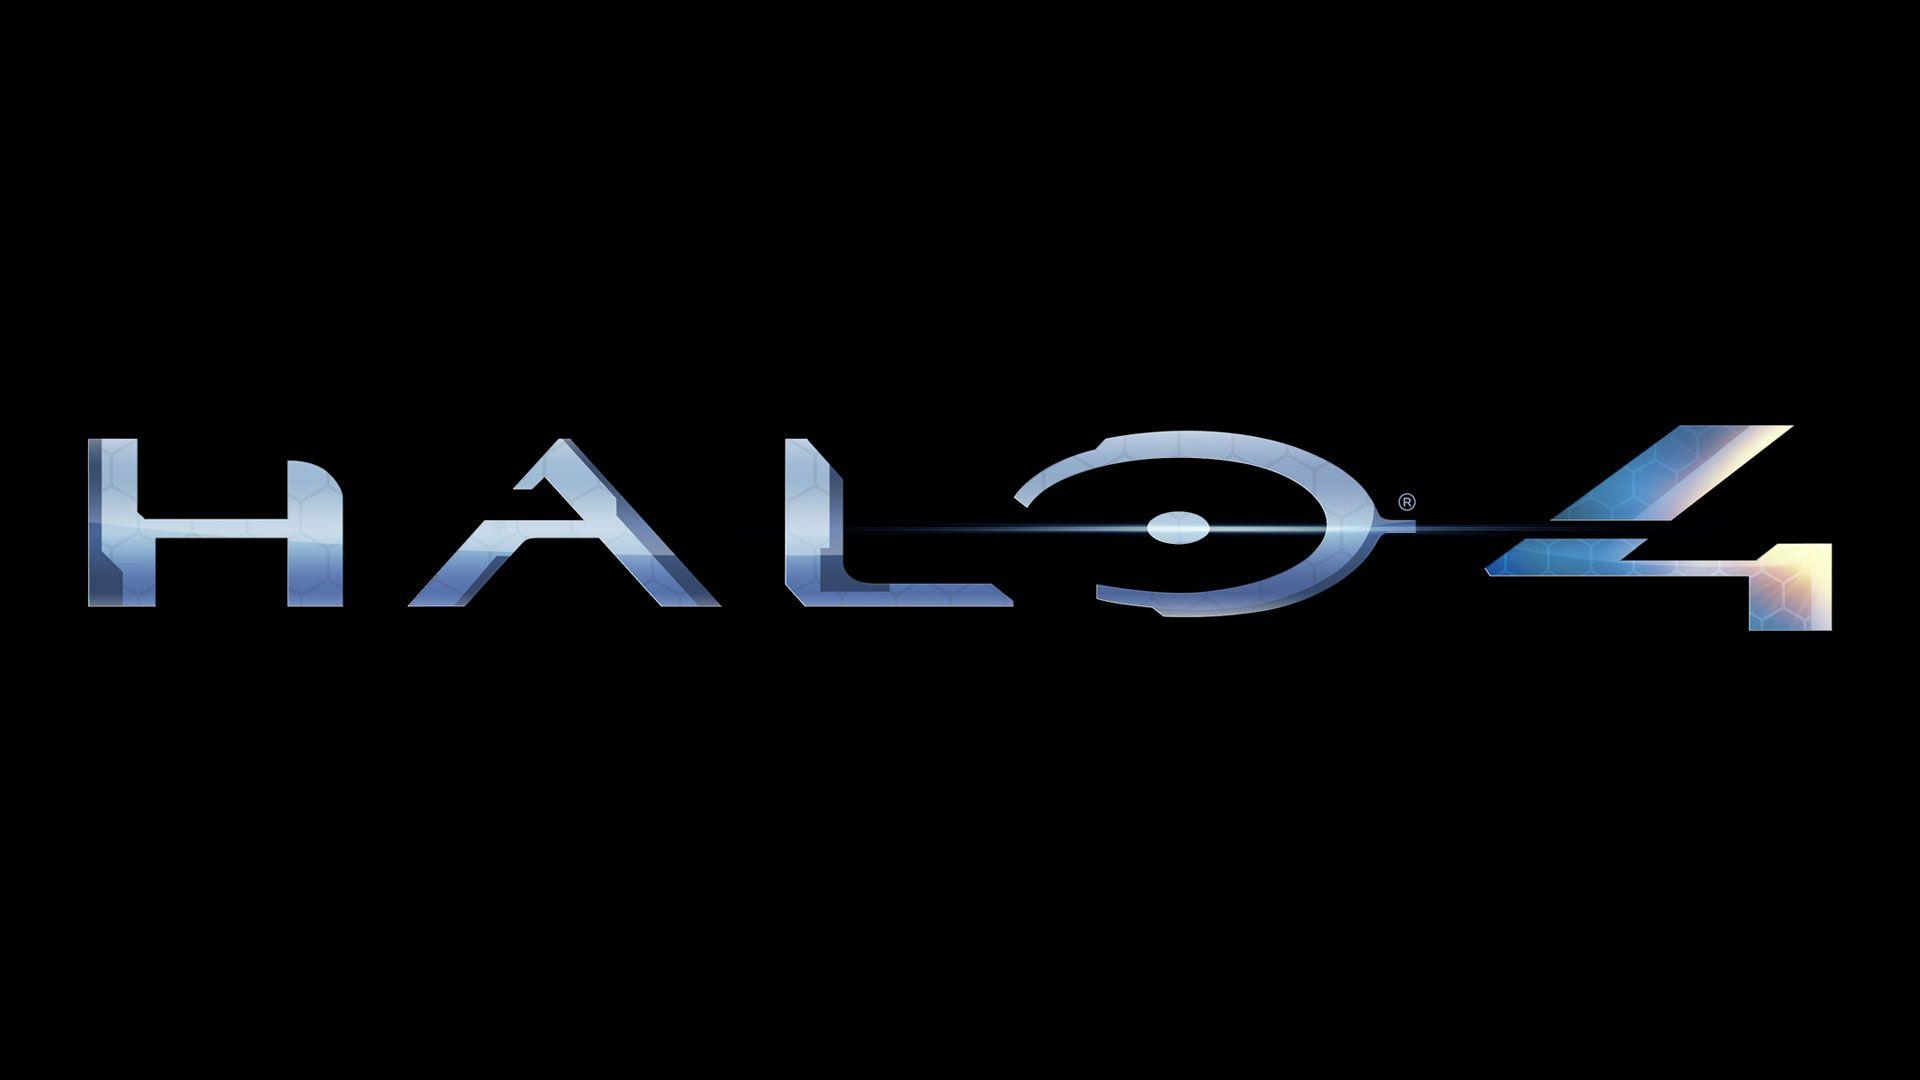 Halo 4 Wallpaper. HD Wallpaper Base